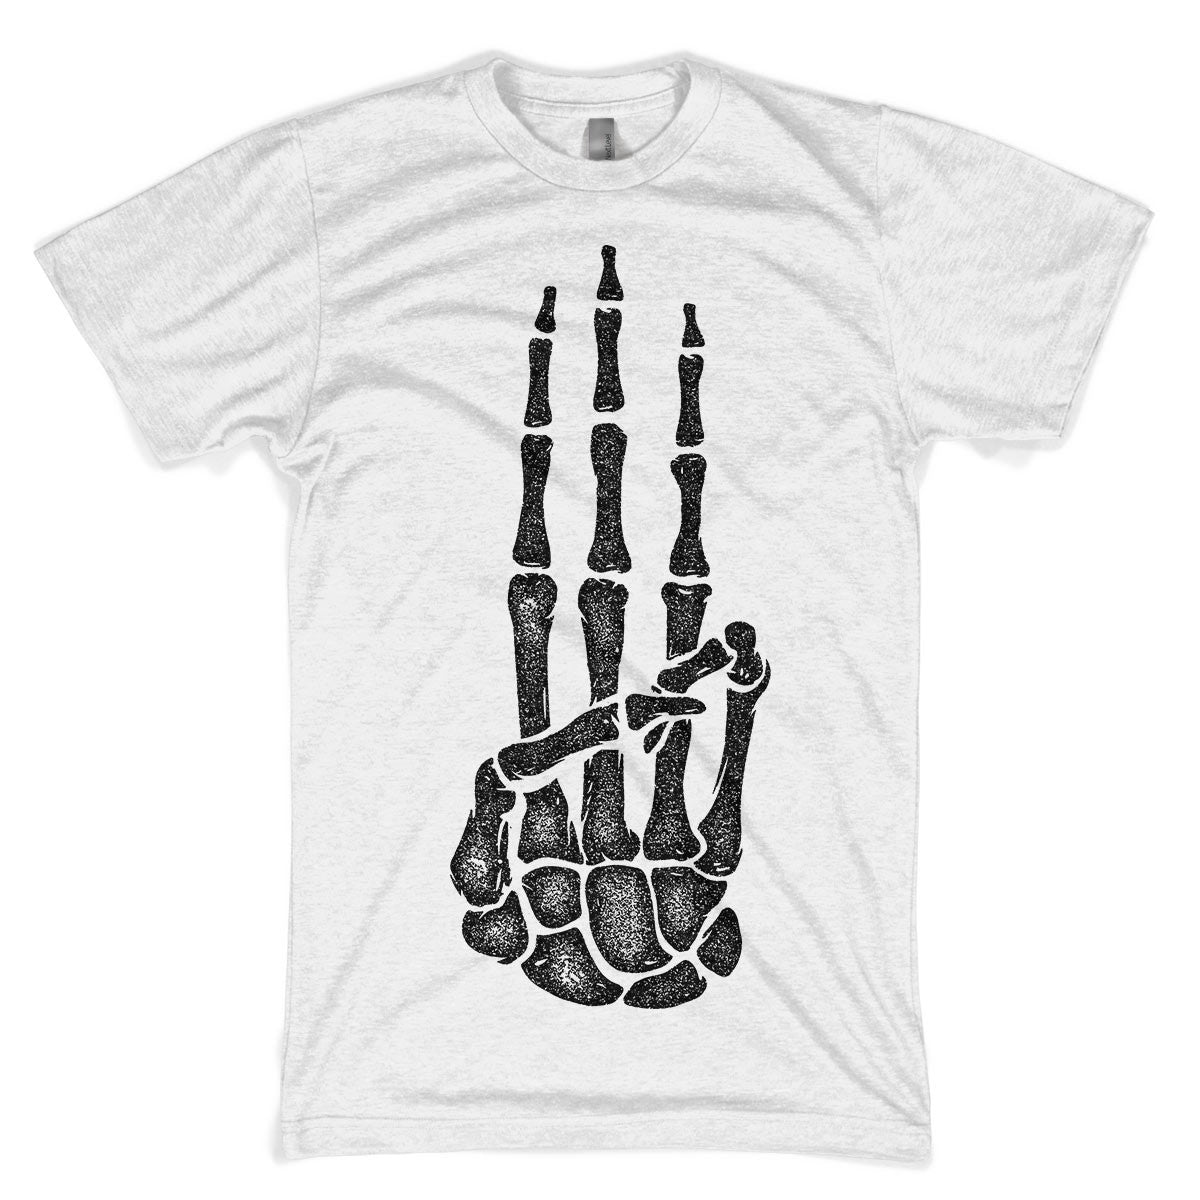 Hunger Games Three Finger Salute Skeleton T-shirt